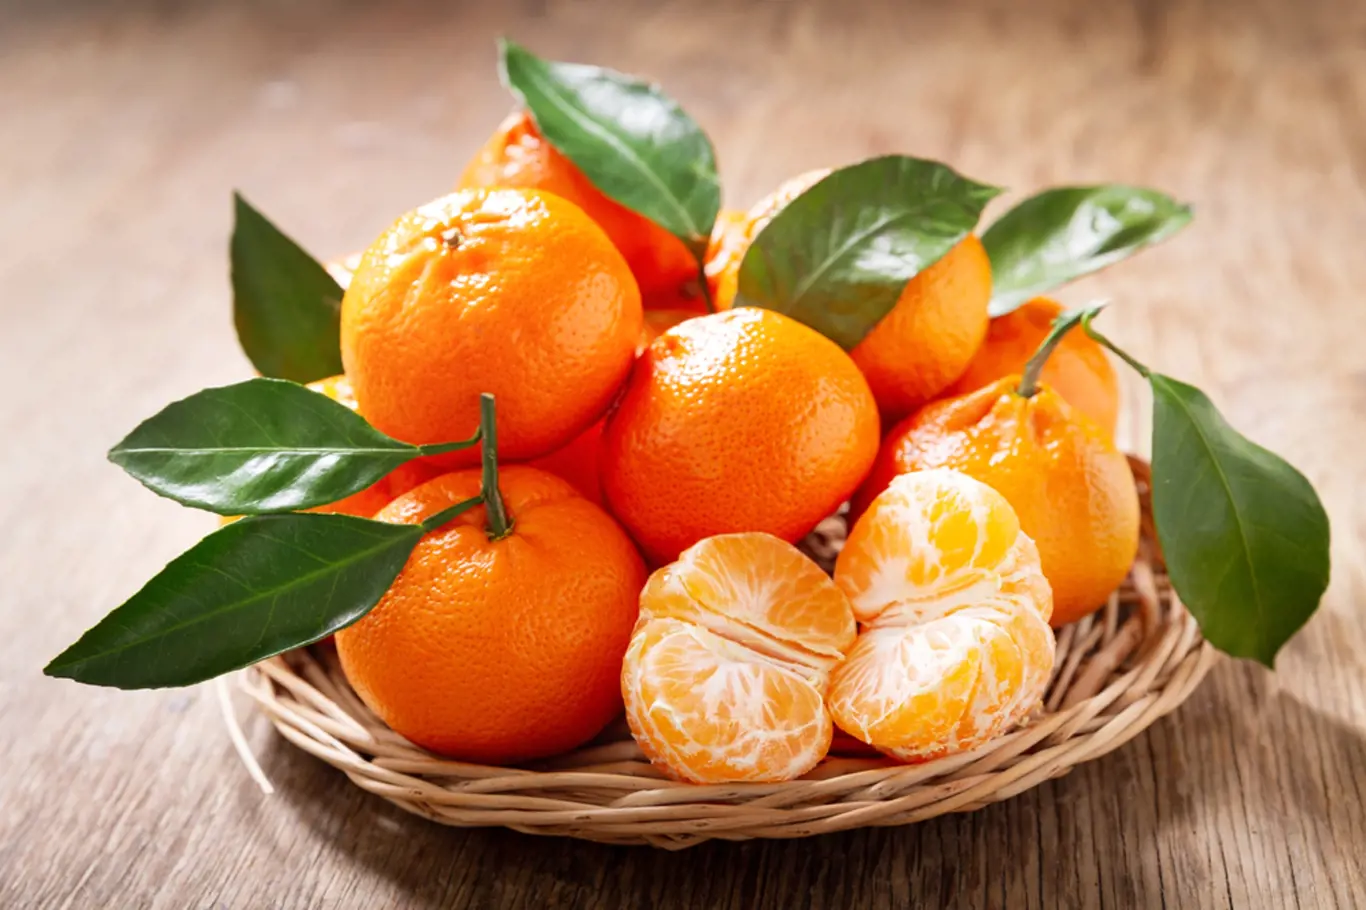 Kolik můžu sníst mandarinek?